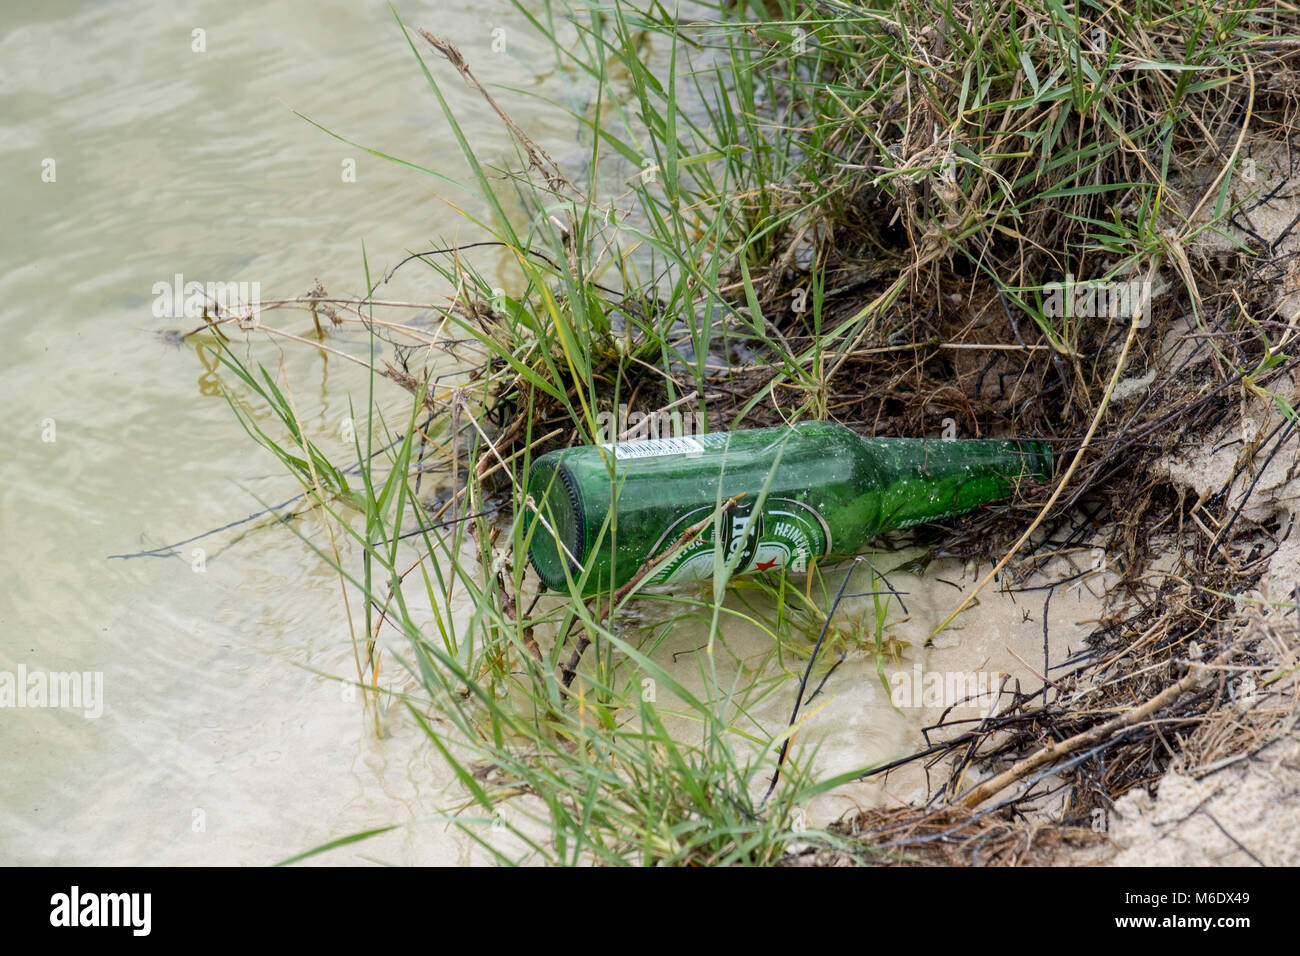 Bouteille de bière Heineken a chuté en étang / Lake Banque D'Images